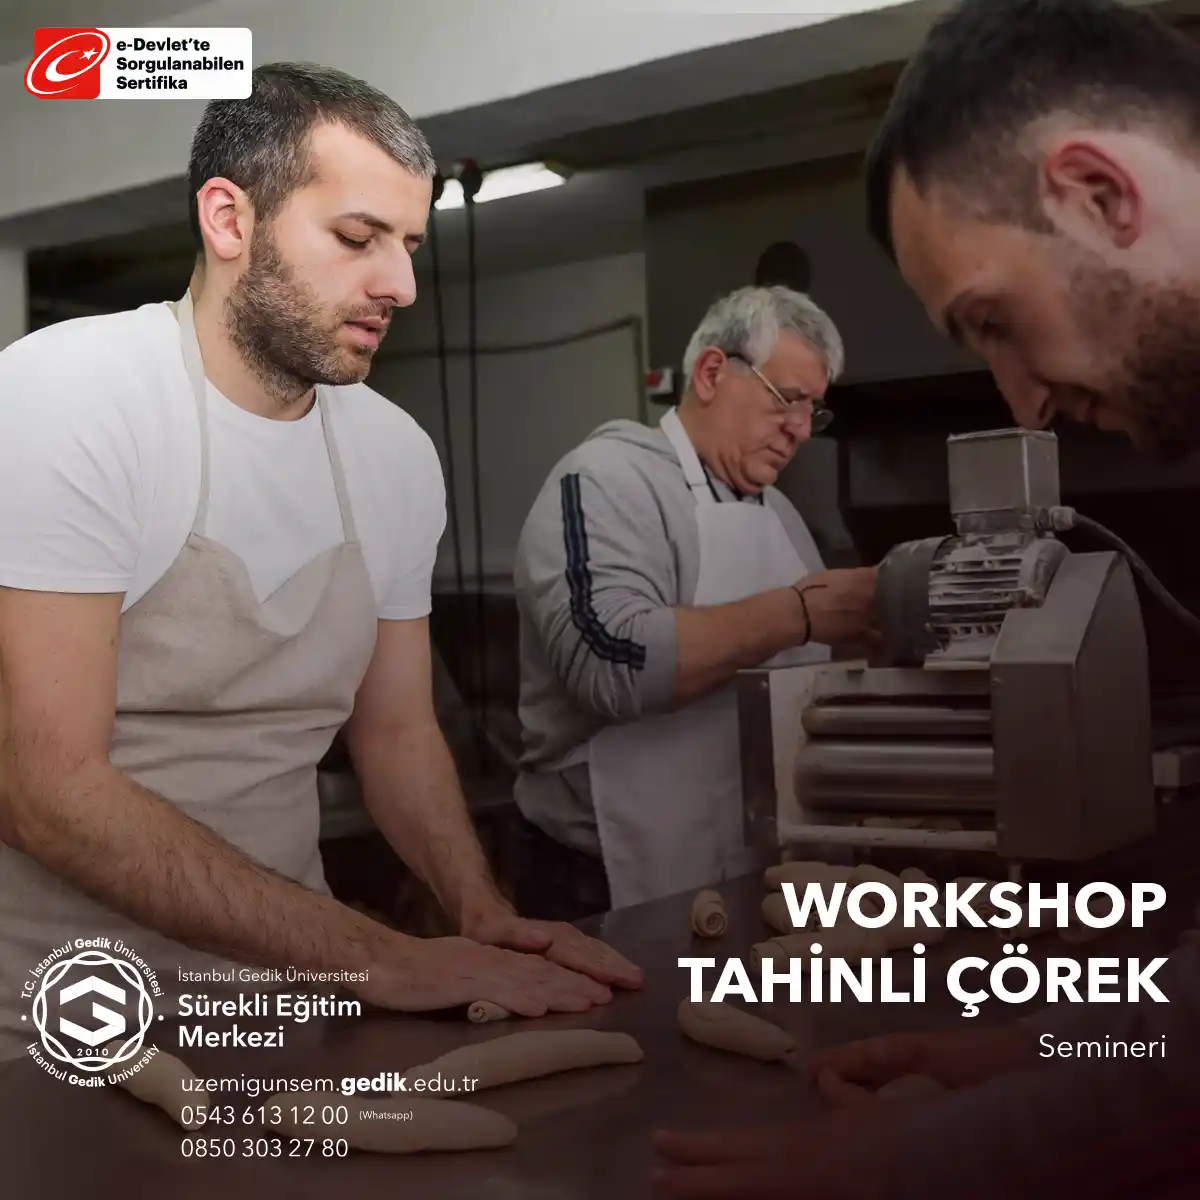 "Tahinli Çörek Workshop" katılımcılara tahinli çörek yapmayı öğretmeyi amaçlayan bir mutfak semineridir. 